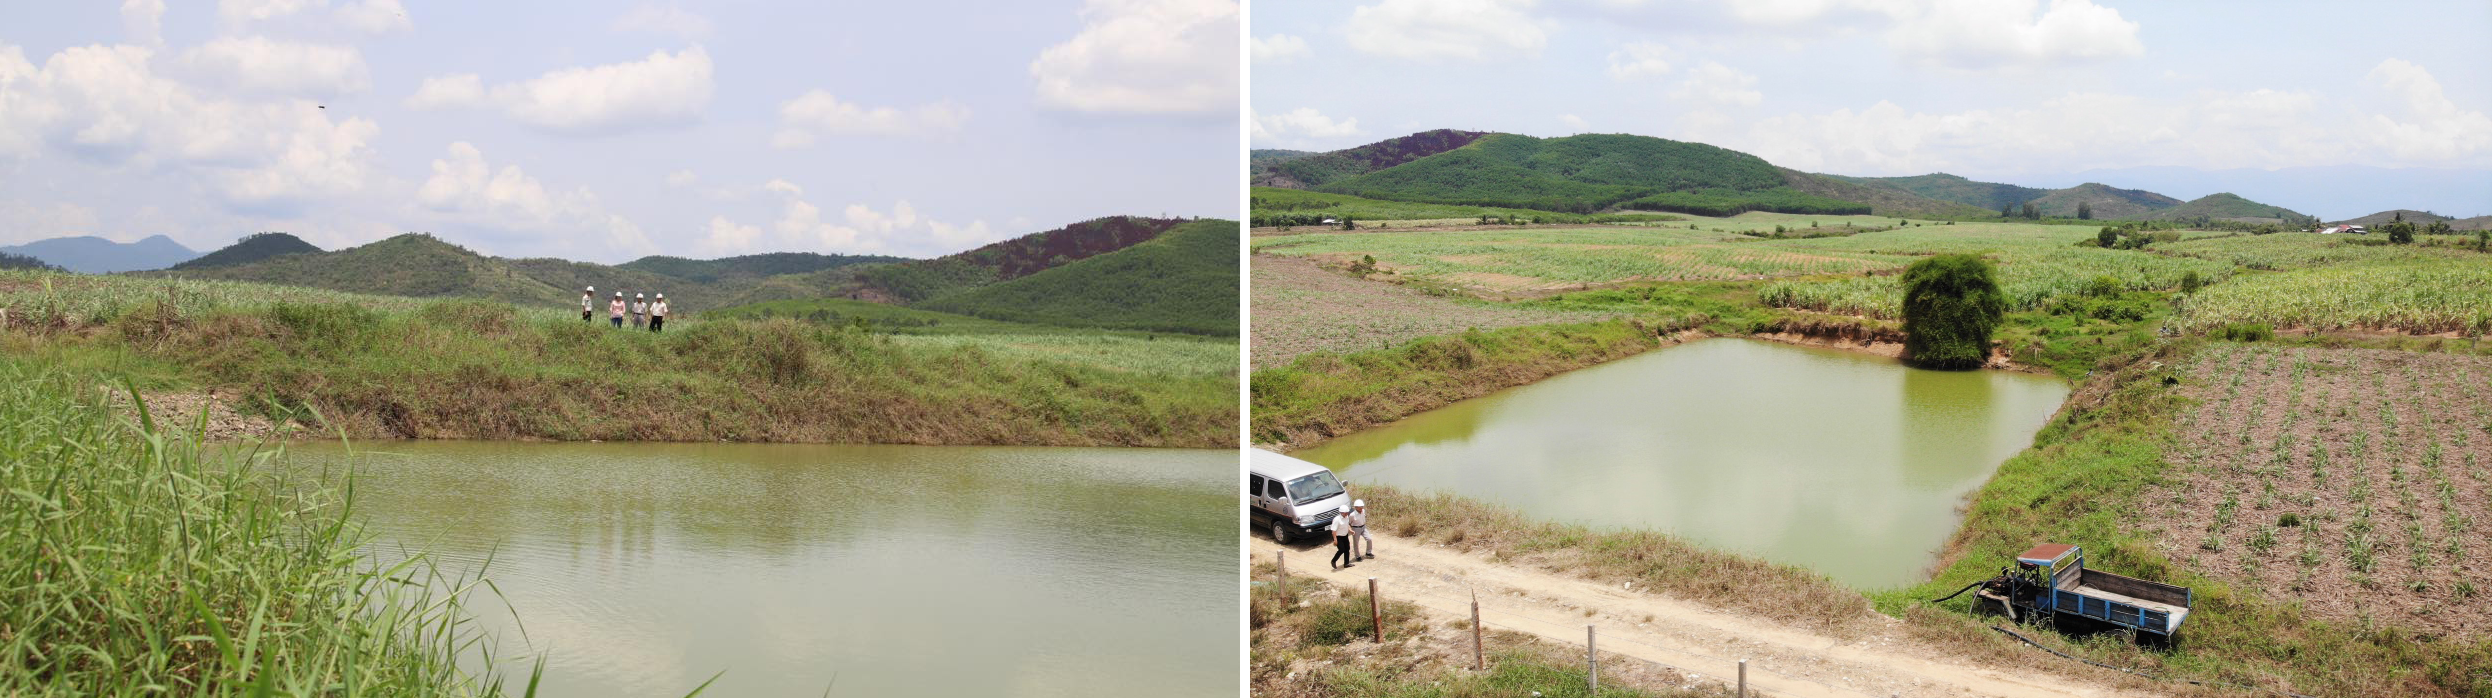 Được Vietsugar đầu tư hỗ trợ kinh phí, gia đình chị Hương đã đào ao tích được 20.000m3 nước để tưới mía trong mùa khô.